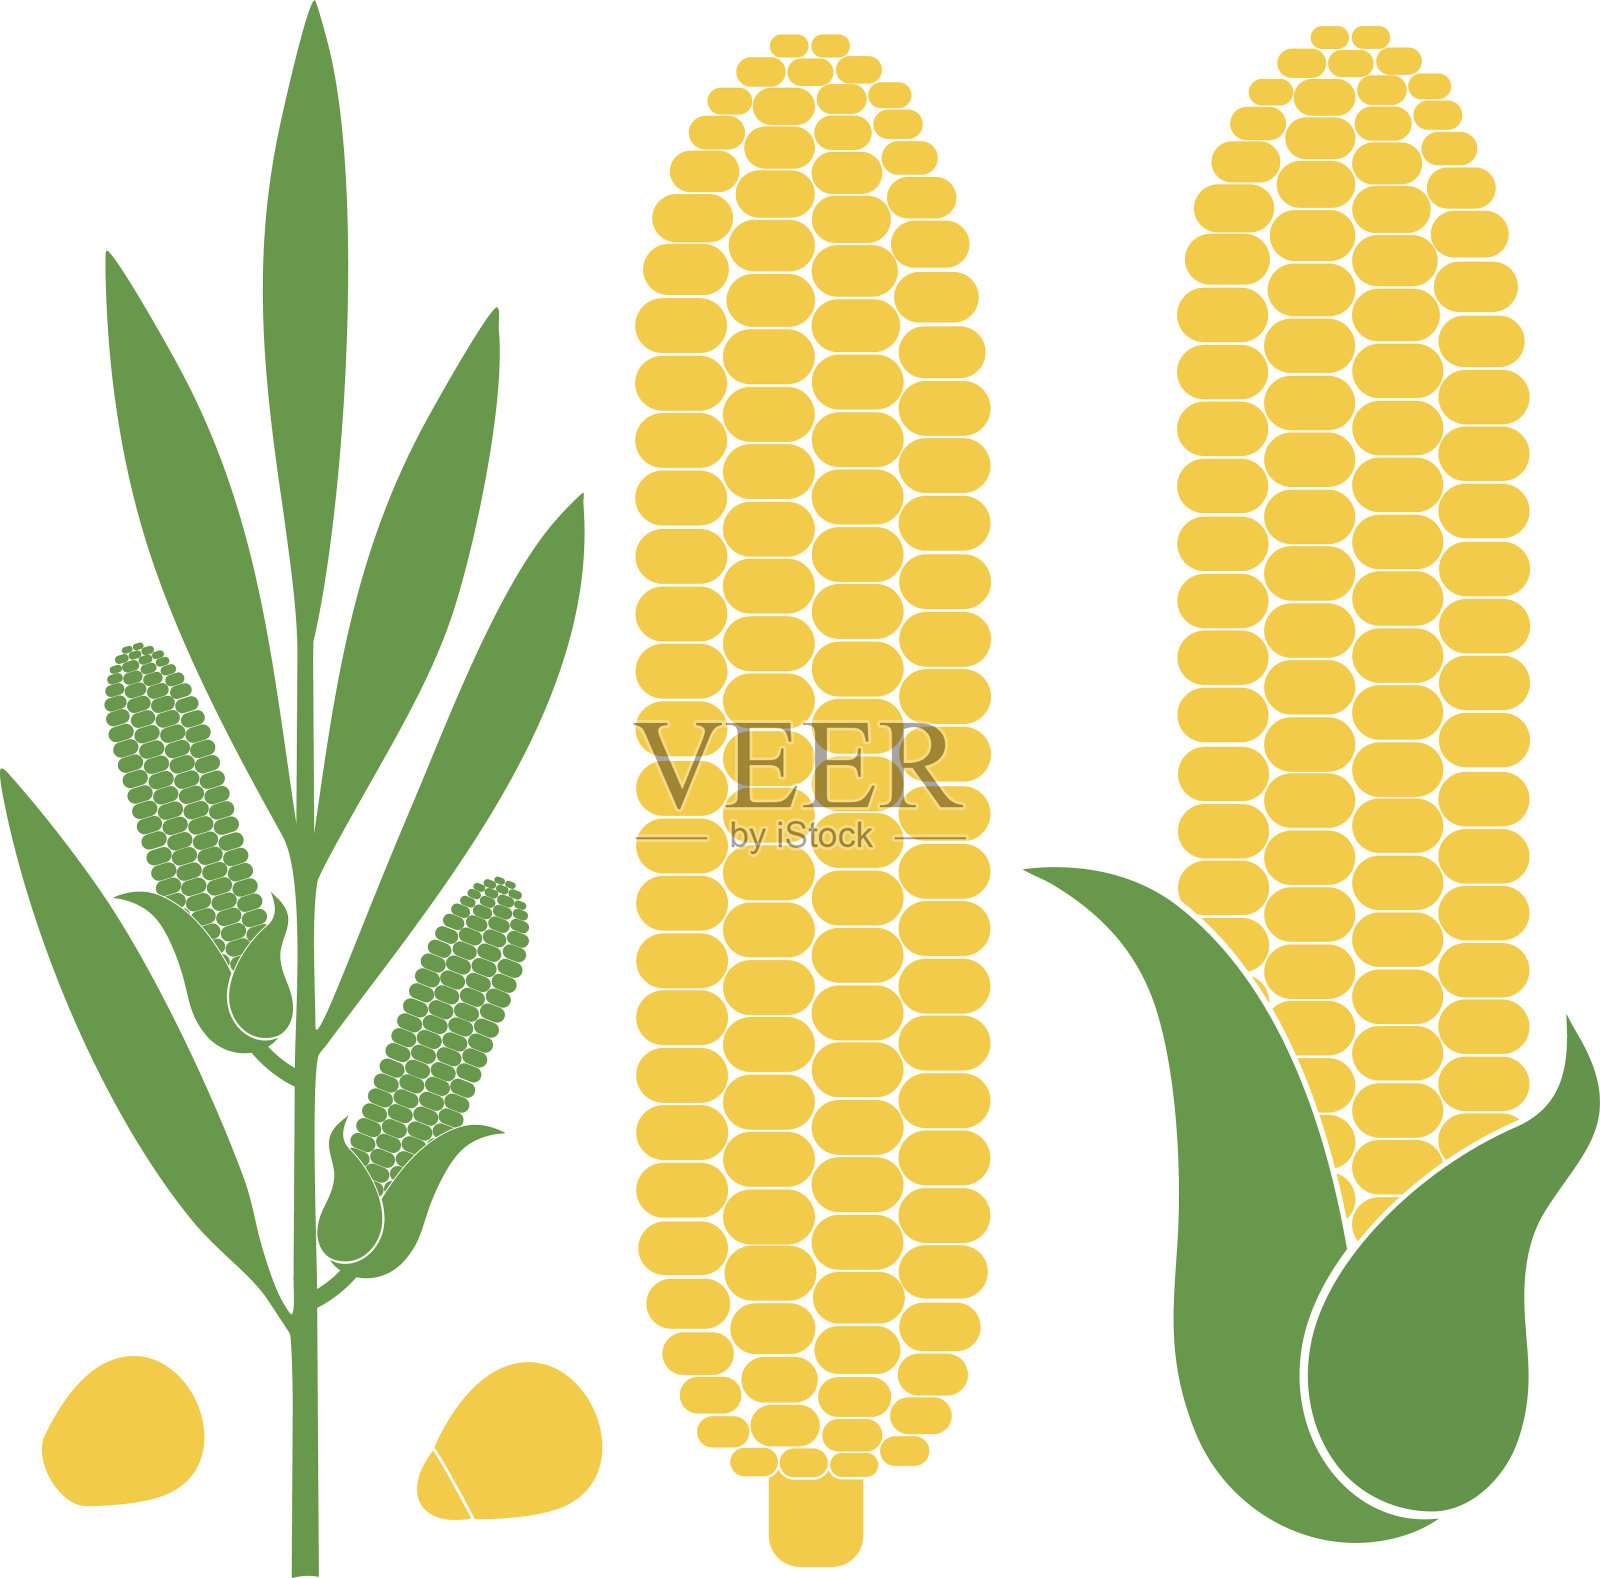 不同形式和人物的玉米插图插画图片素材